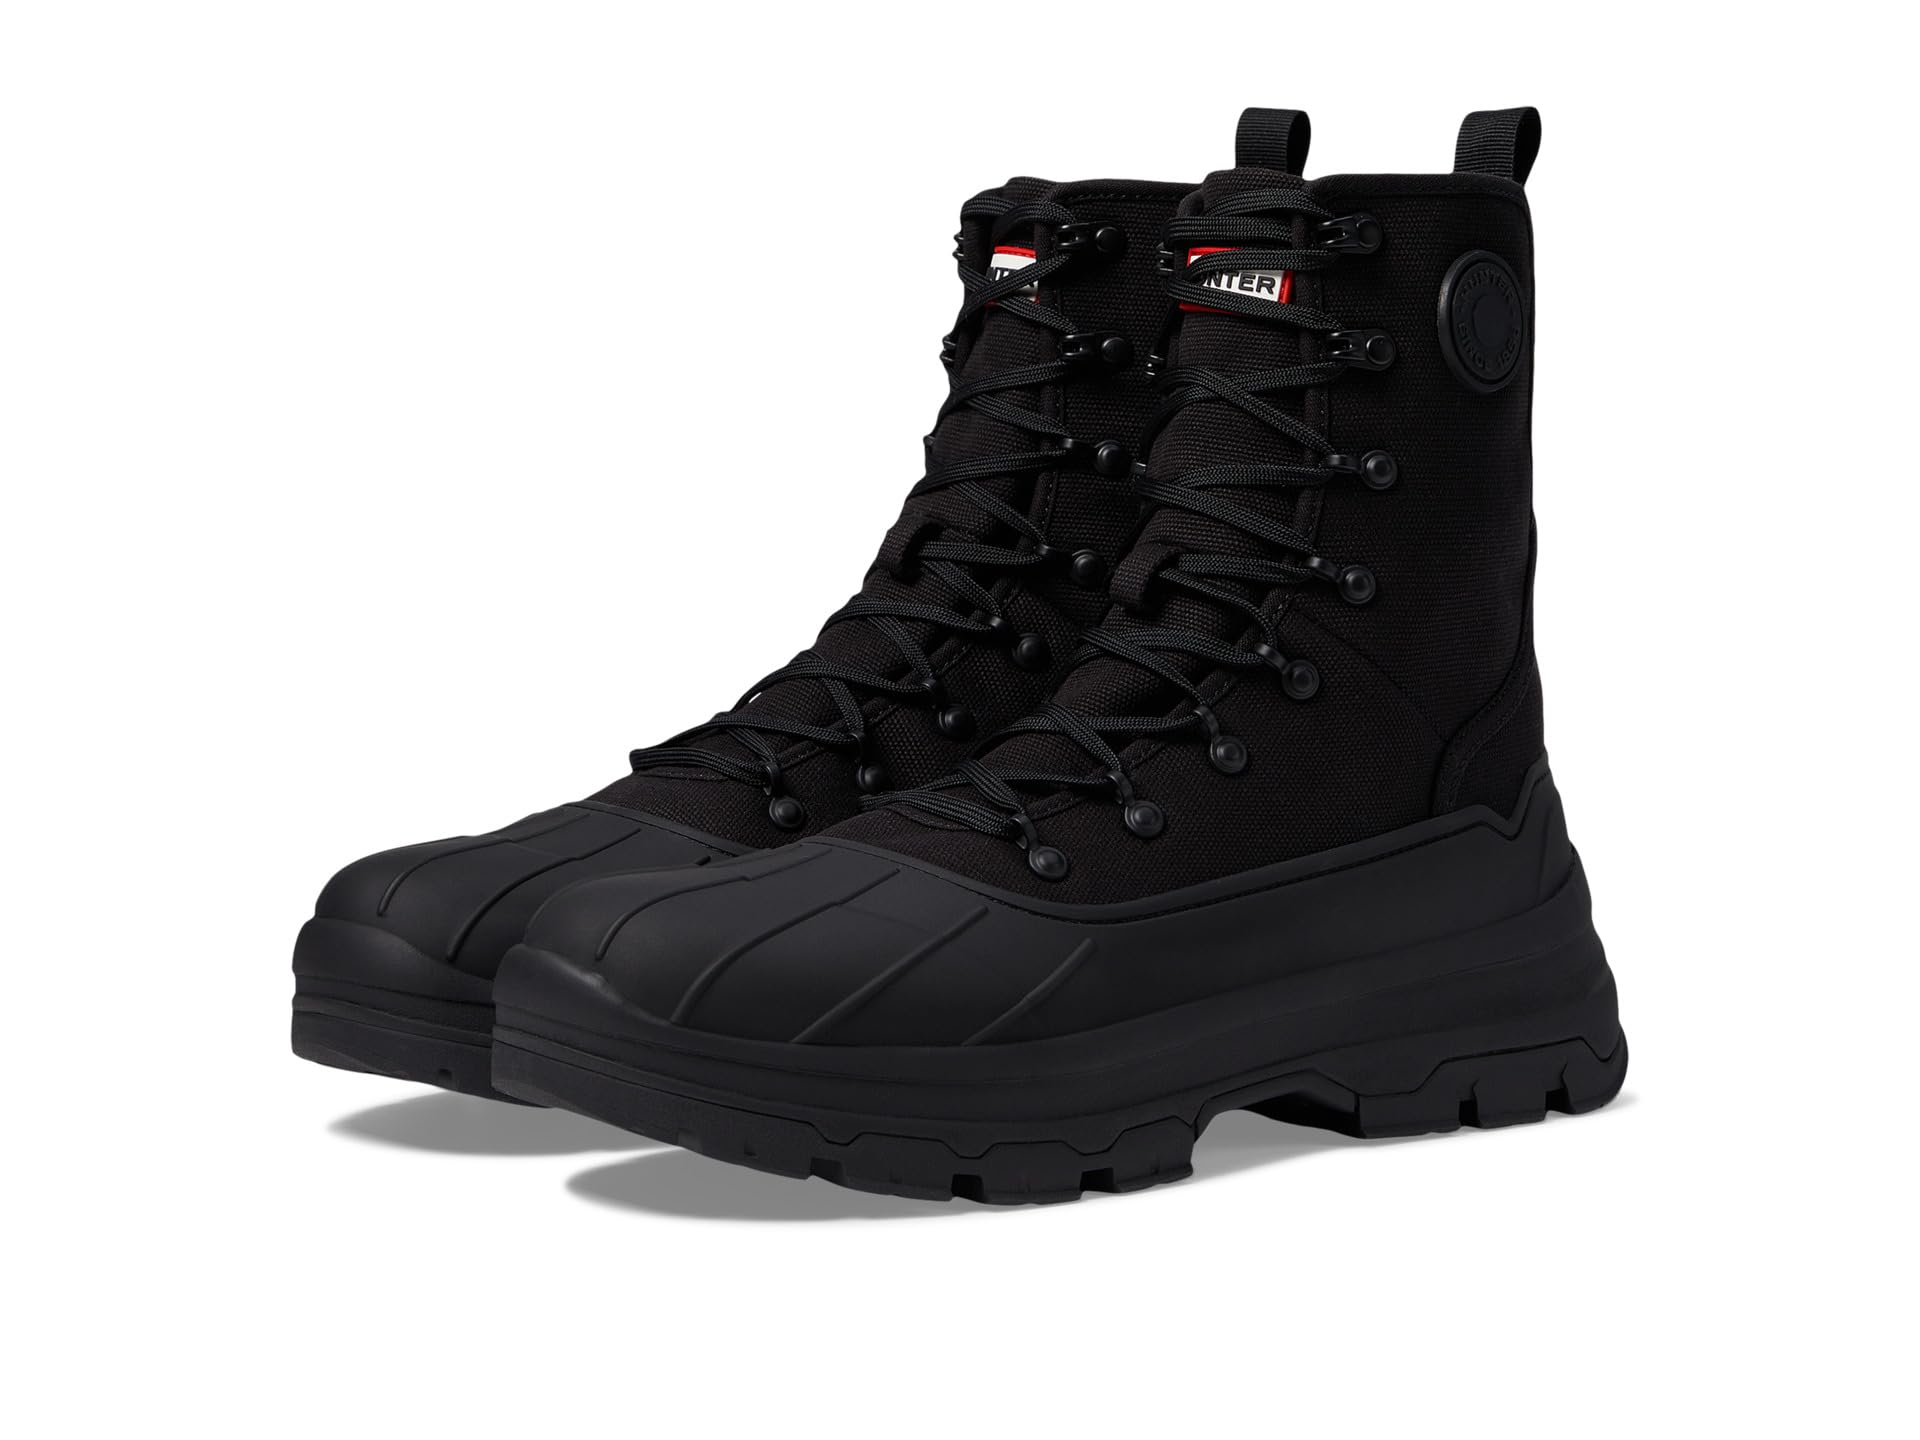 Ботинки Hunter Explorer Desert Boot, черный походная обувь explorer desert boot hunter цвет cast black